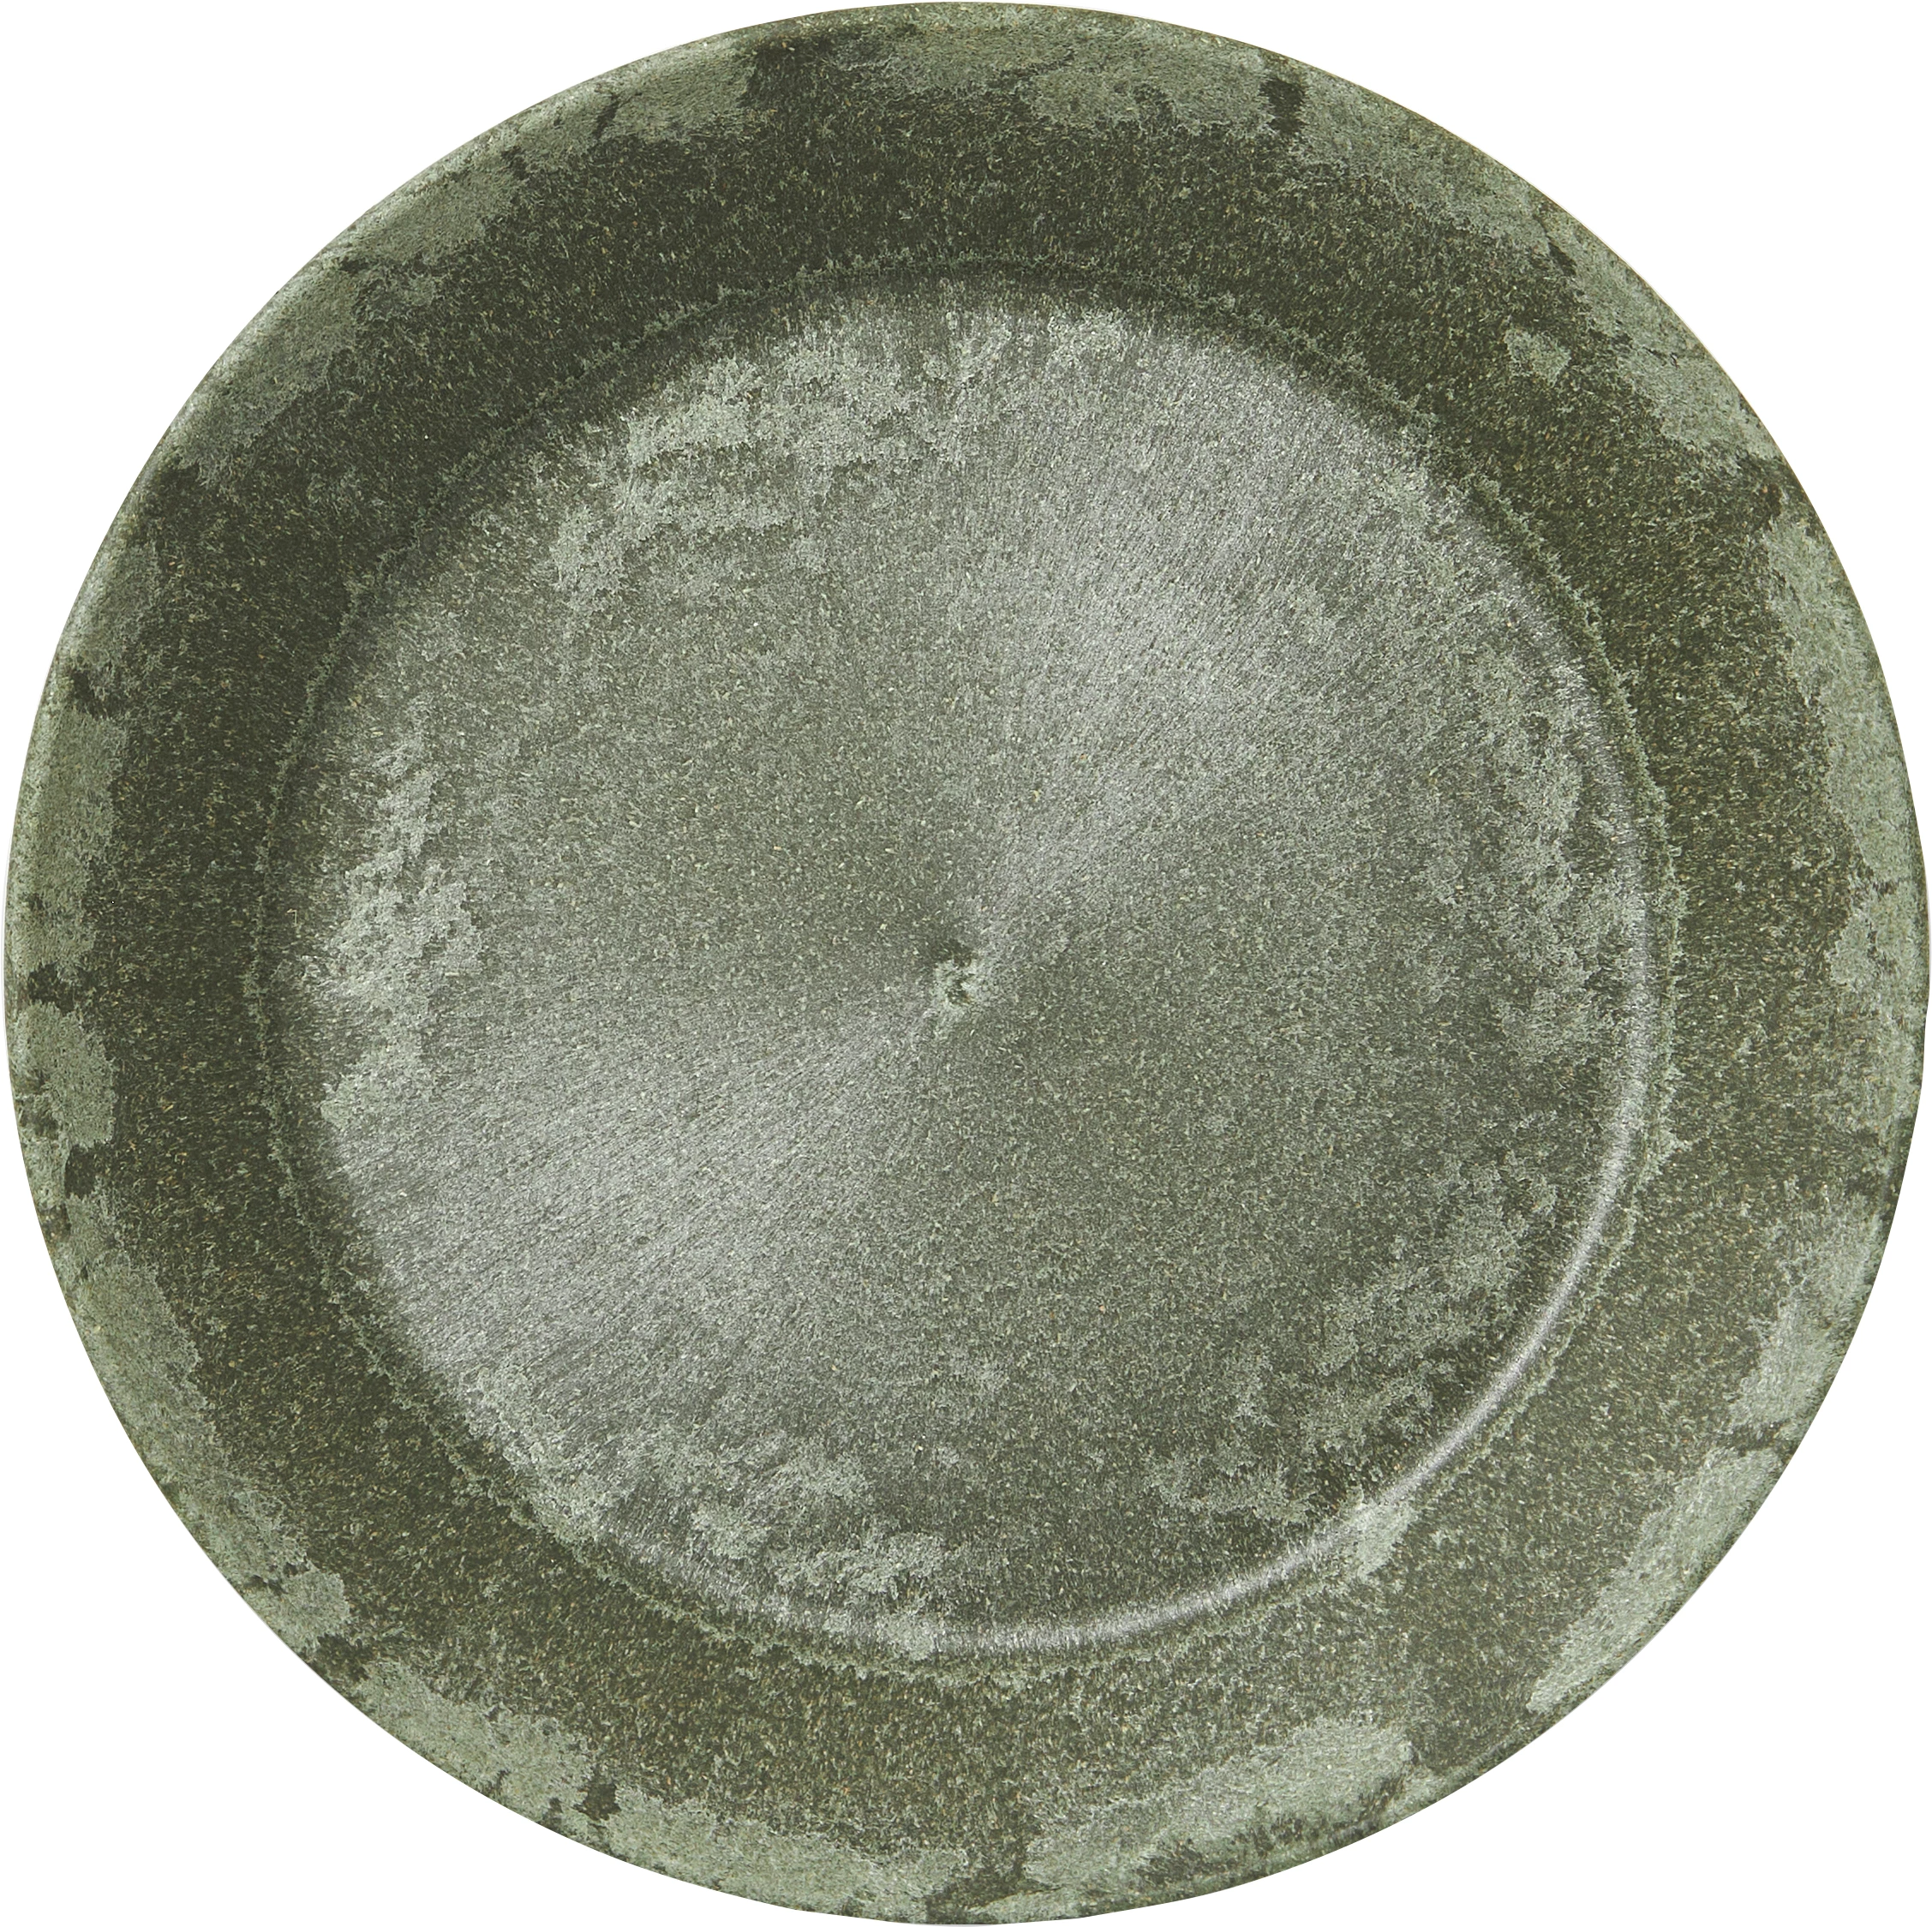 Luups tallerken uden fane, grøn, ø18 cm